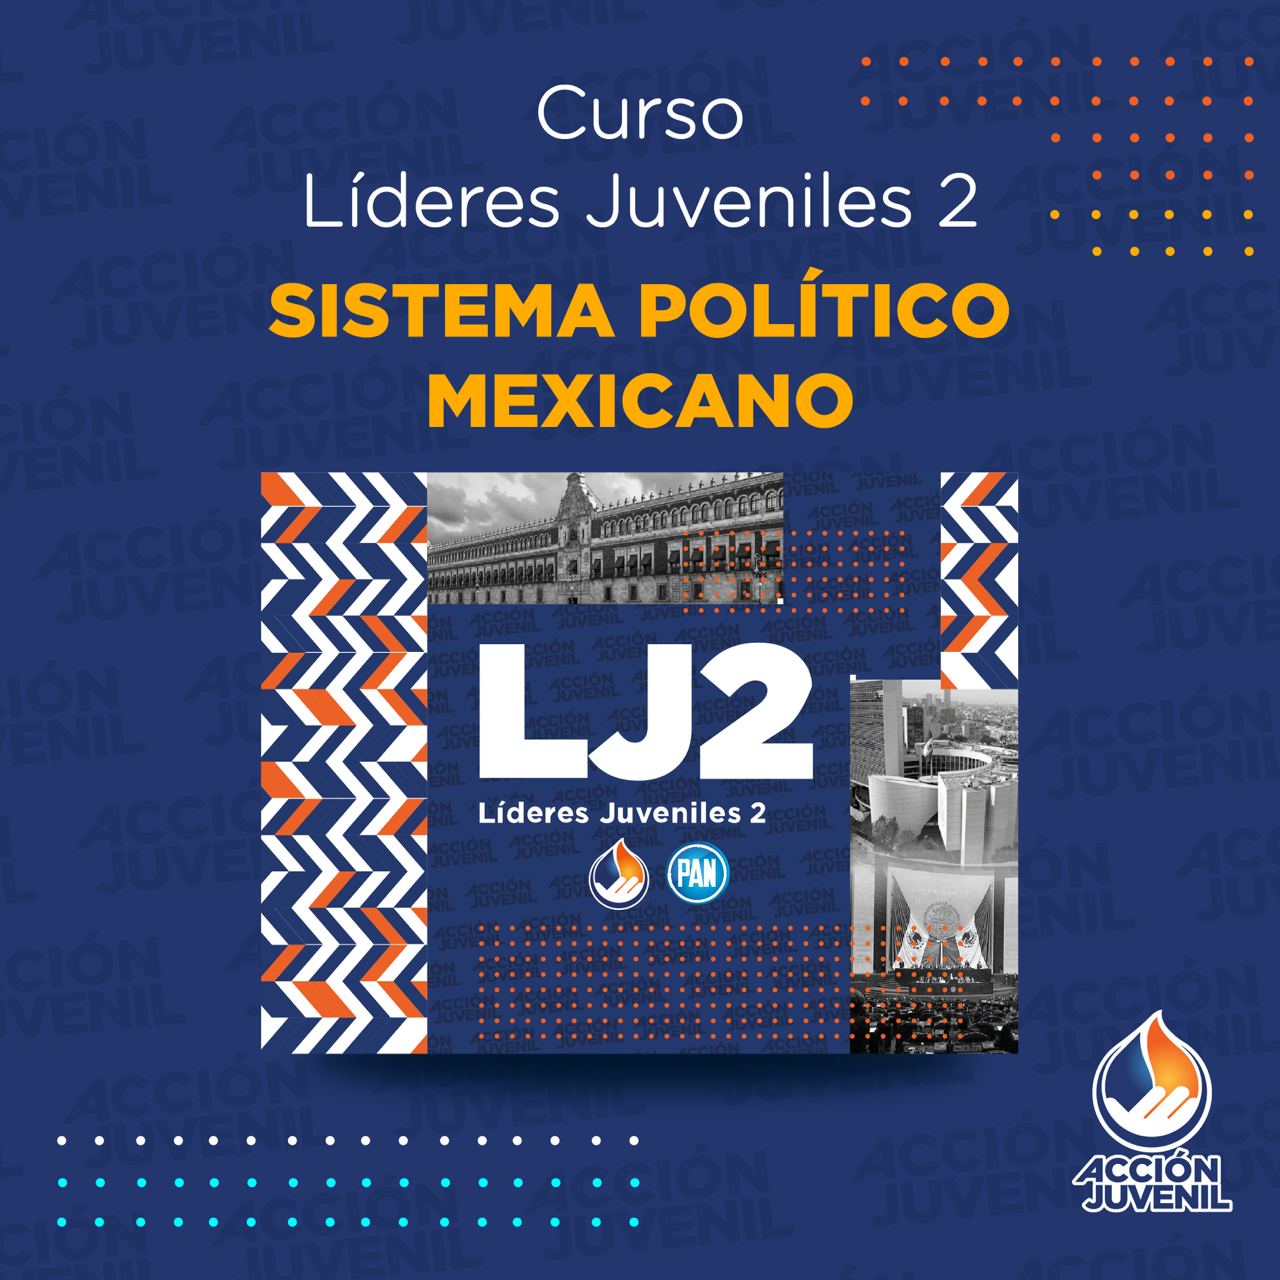 Curso Líderes Juveniles 2 Sistema Político Mexicano Camargo, CHH 19/11/22